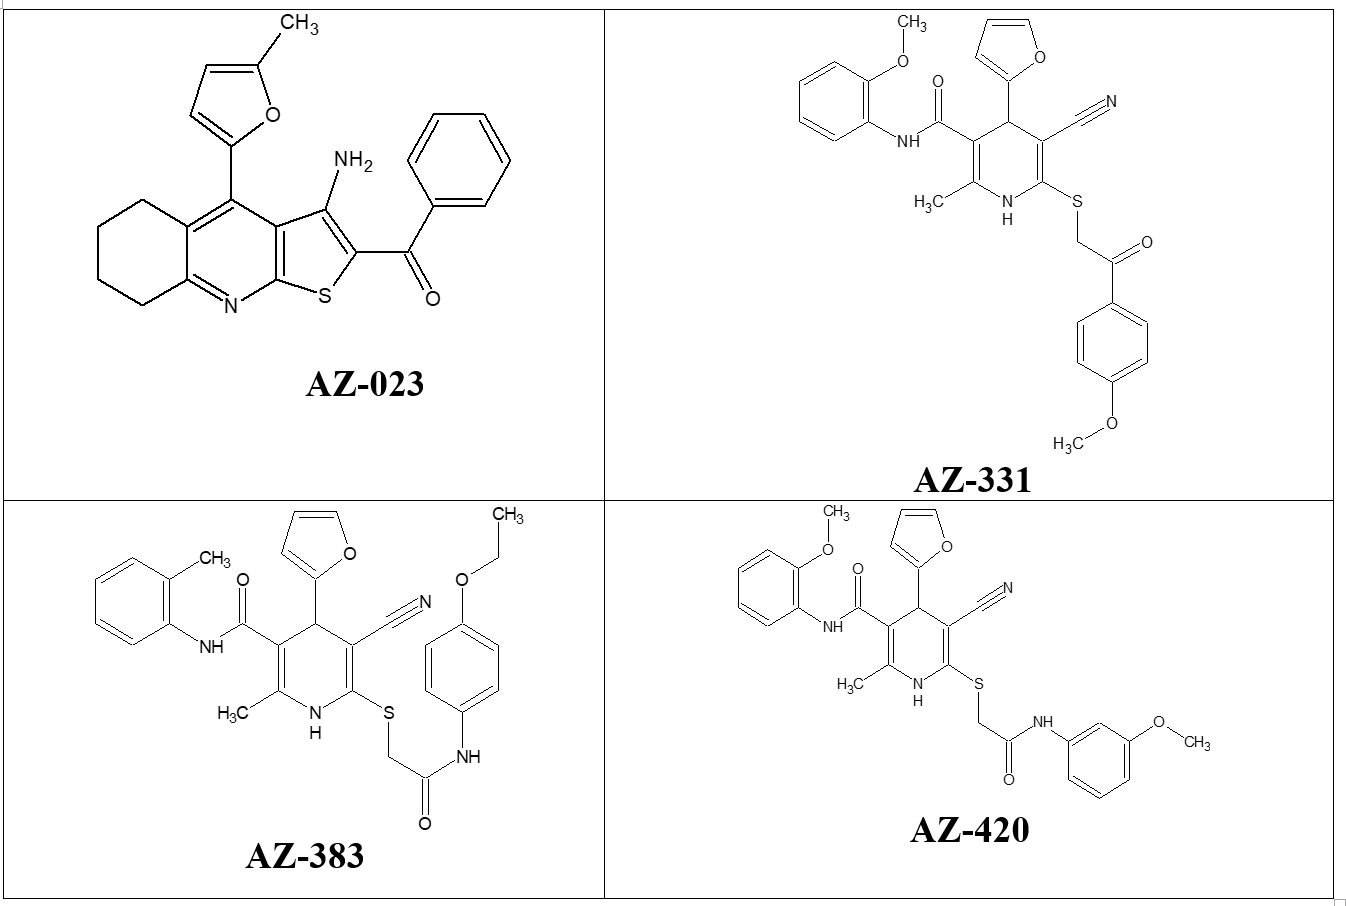 Структурные формулы соединений конденсированных производных тиенопиридина и 1,4-дигидропиридина, отобранных для проведения опытов по исследованию хронической гепатотоксичности